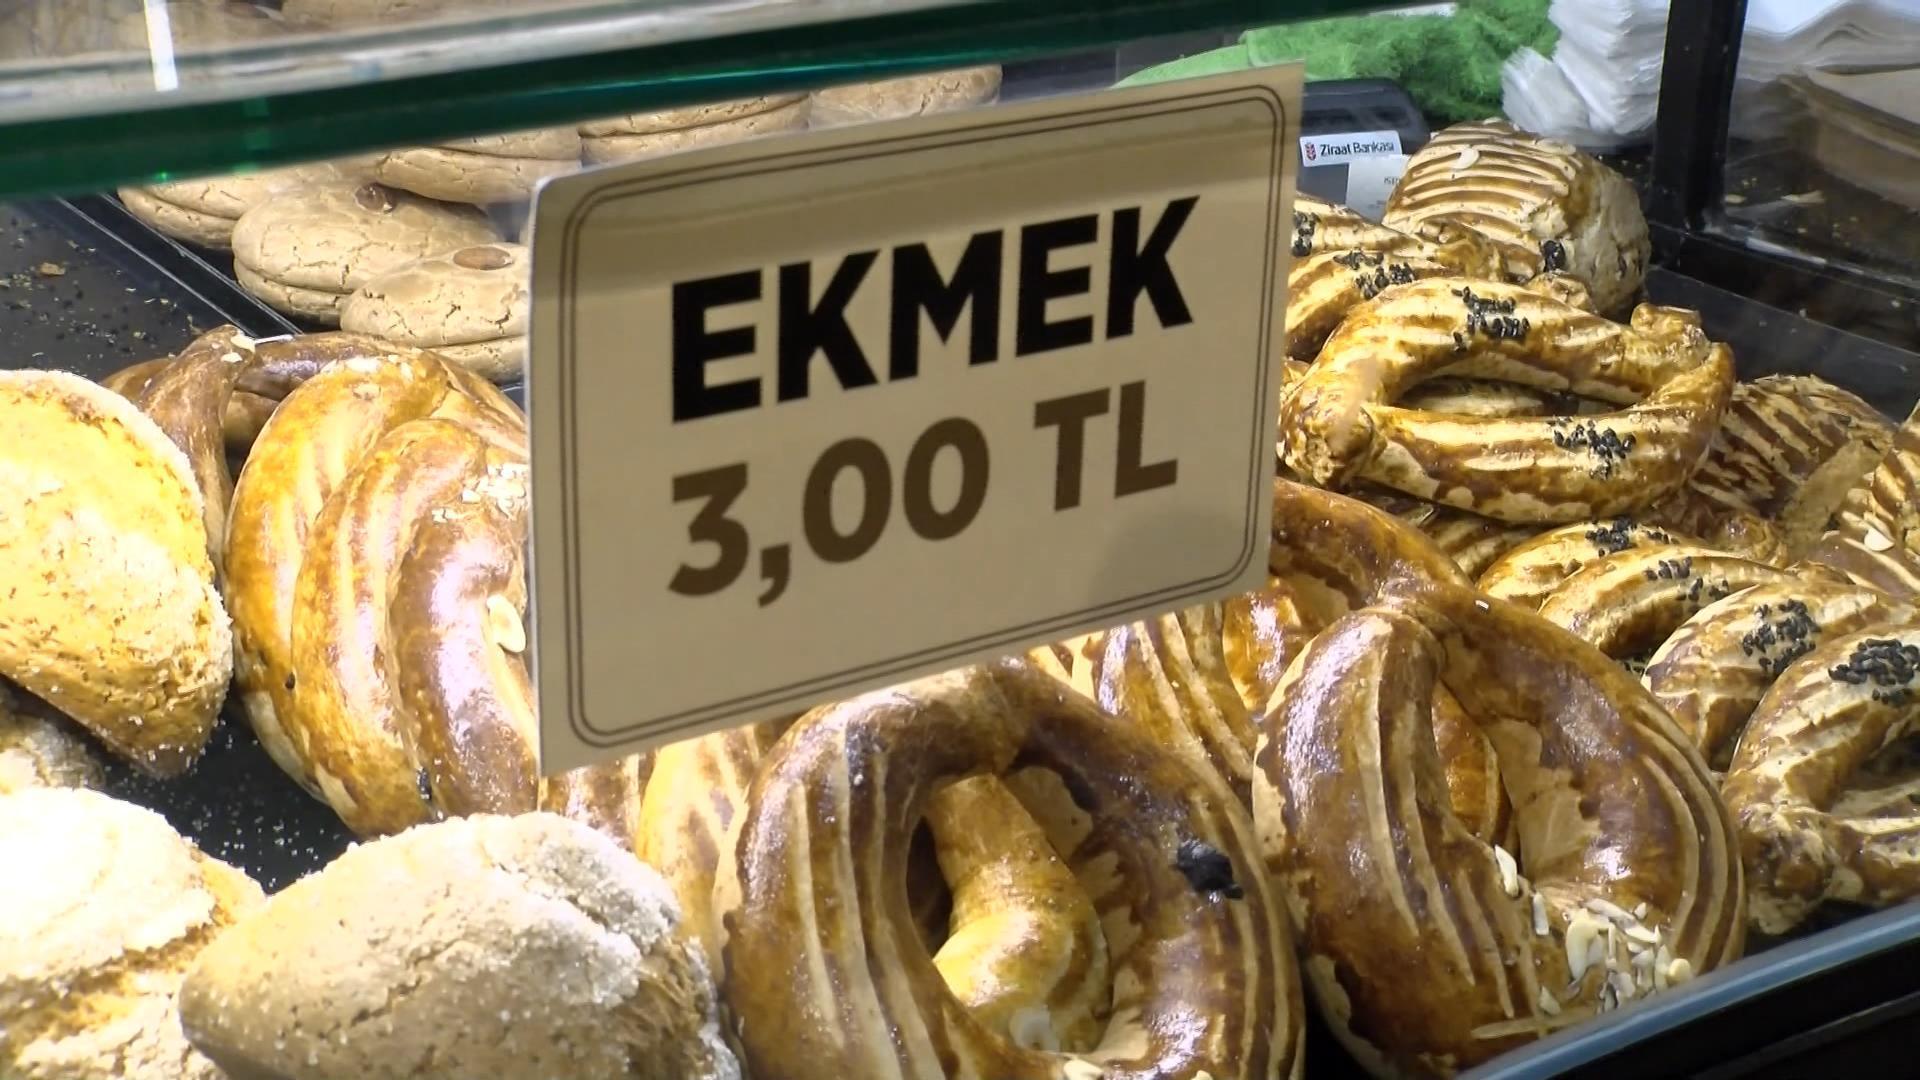 İstanbulda ekmeğe gizli zam; hem gramajı düşürdüler hem de fiyatı artırdılar